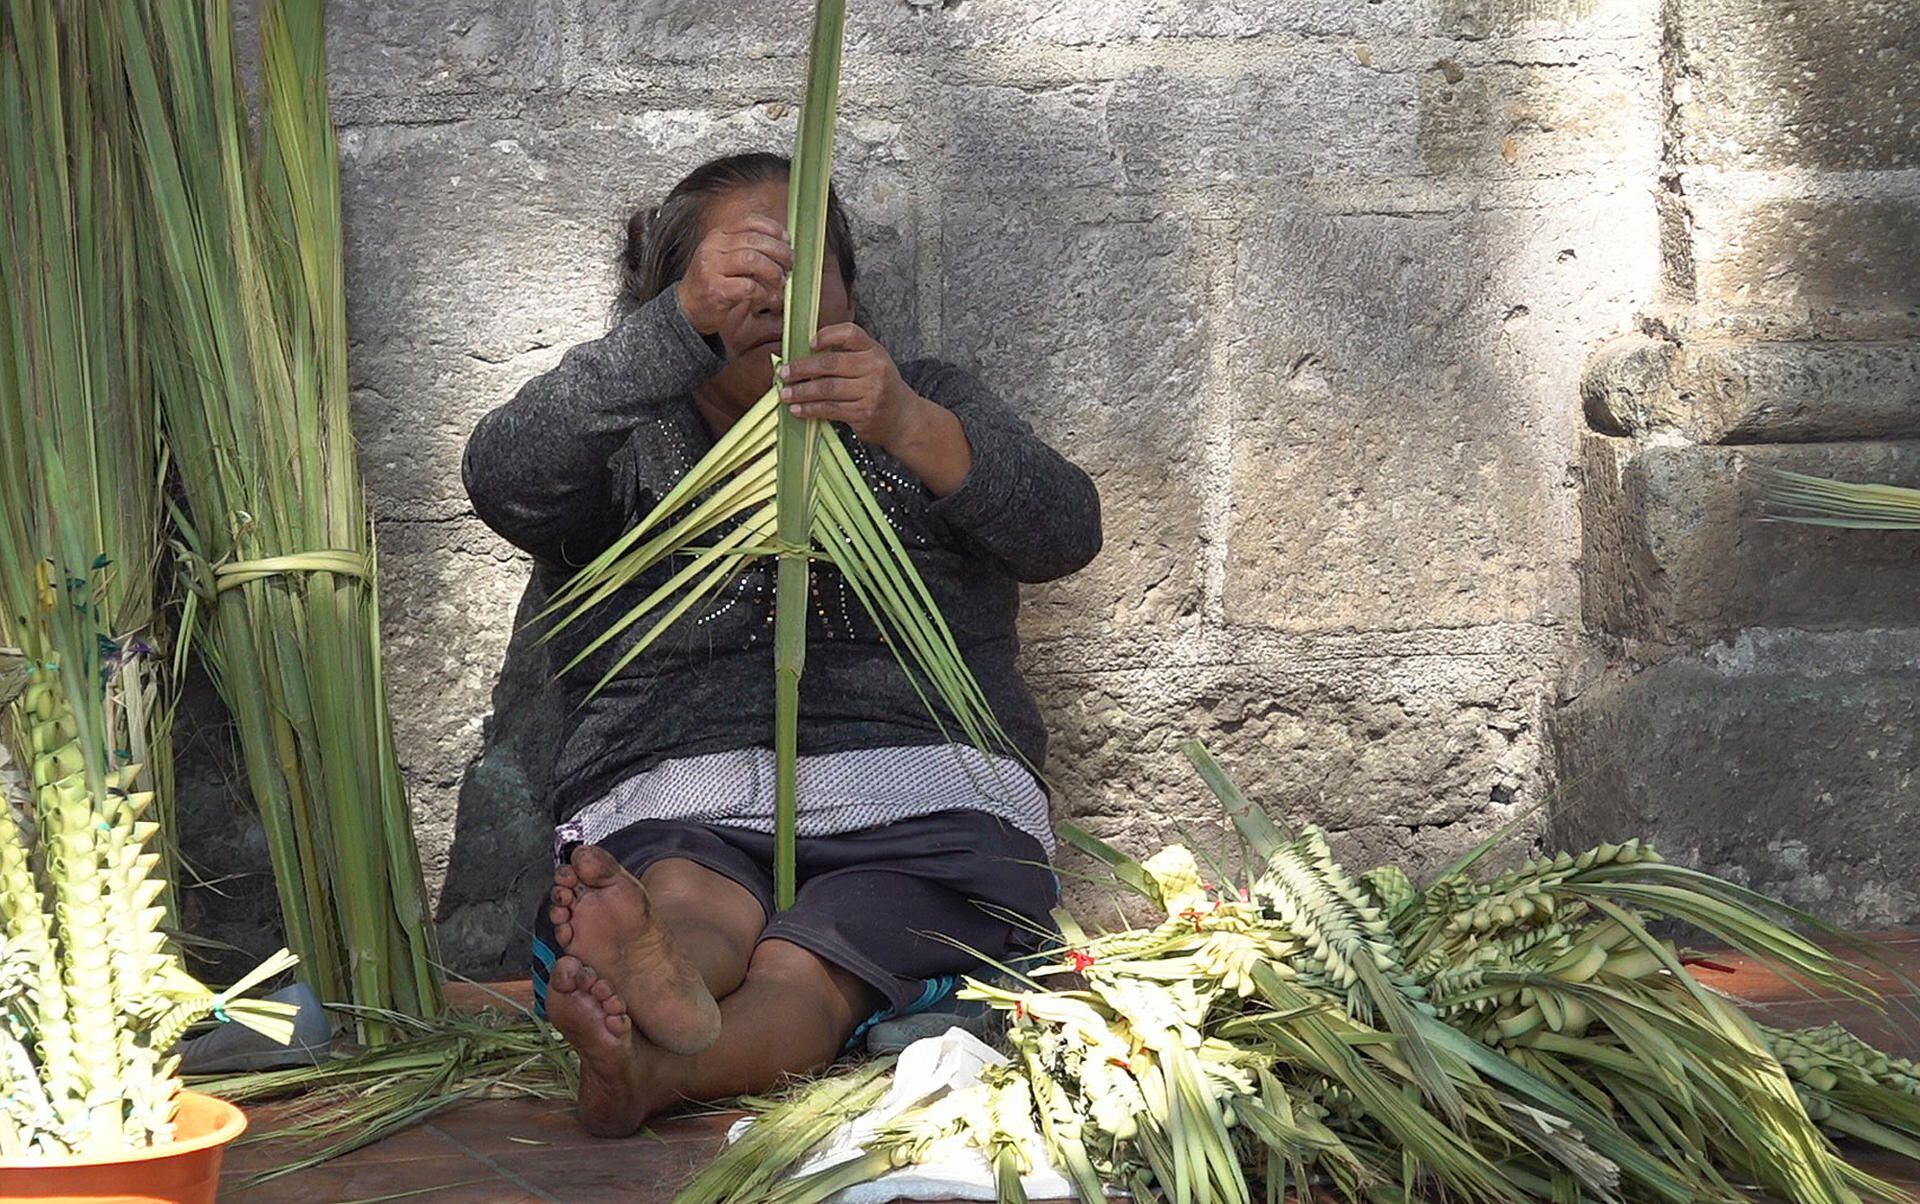 Domingo de Ramos: Artesanos de las palmas viven un ‘viacrucis’ por sequía e incendios